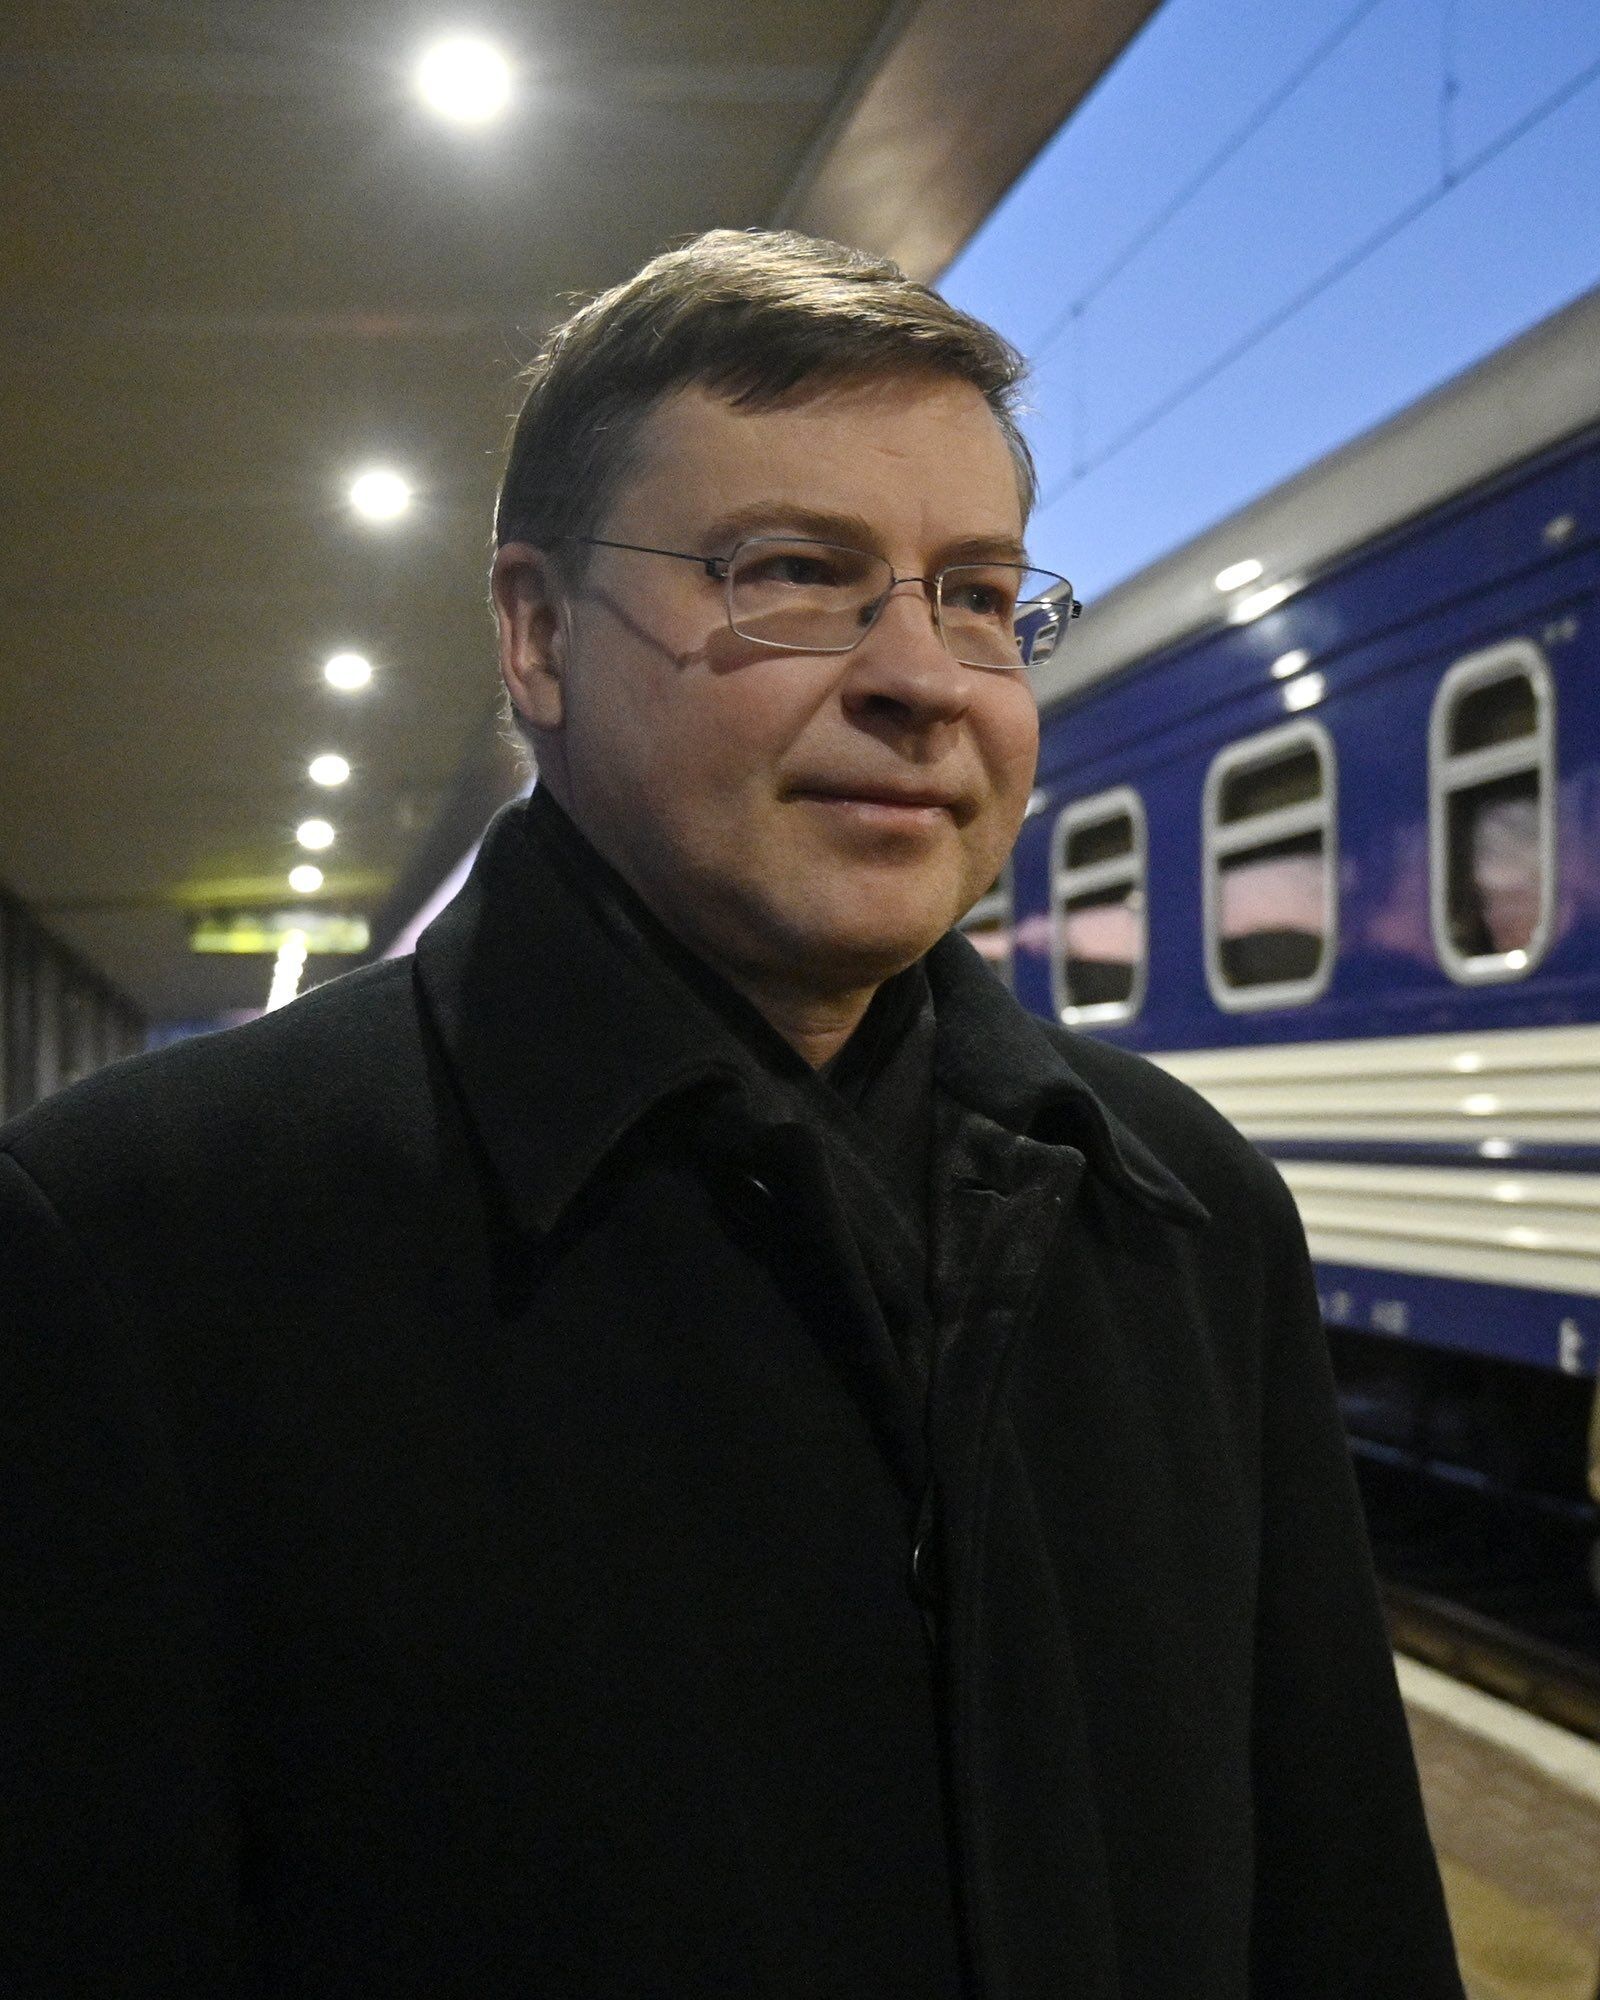 "Украина уже сделала свой четкий выбор": в Киев прибыл с визитом вице-президент Еврокомиссии